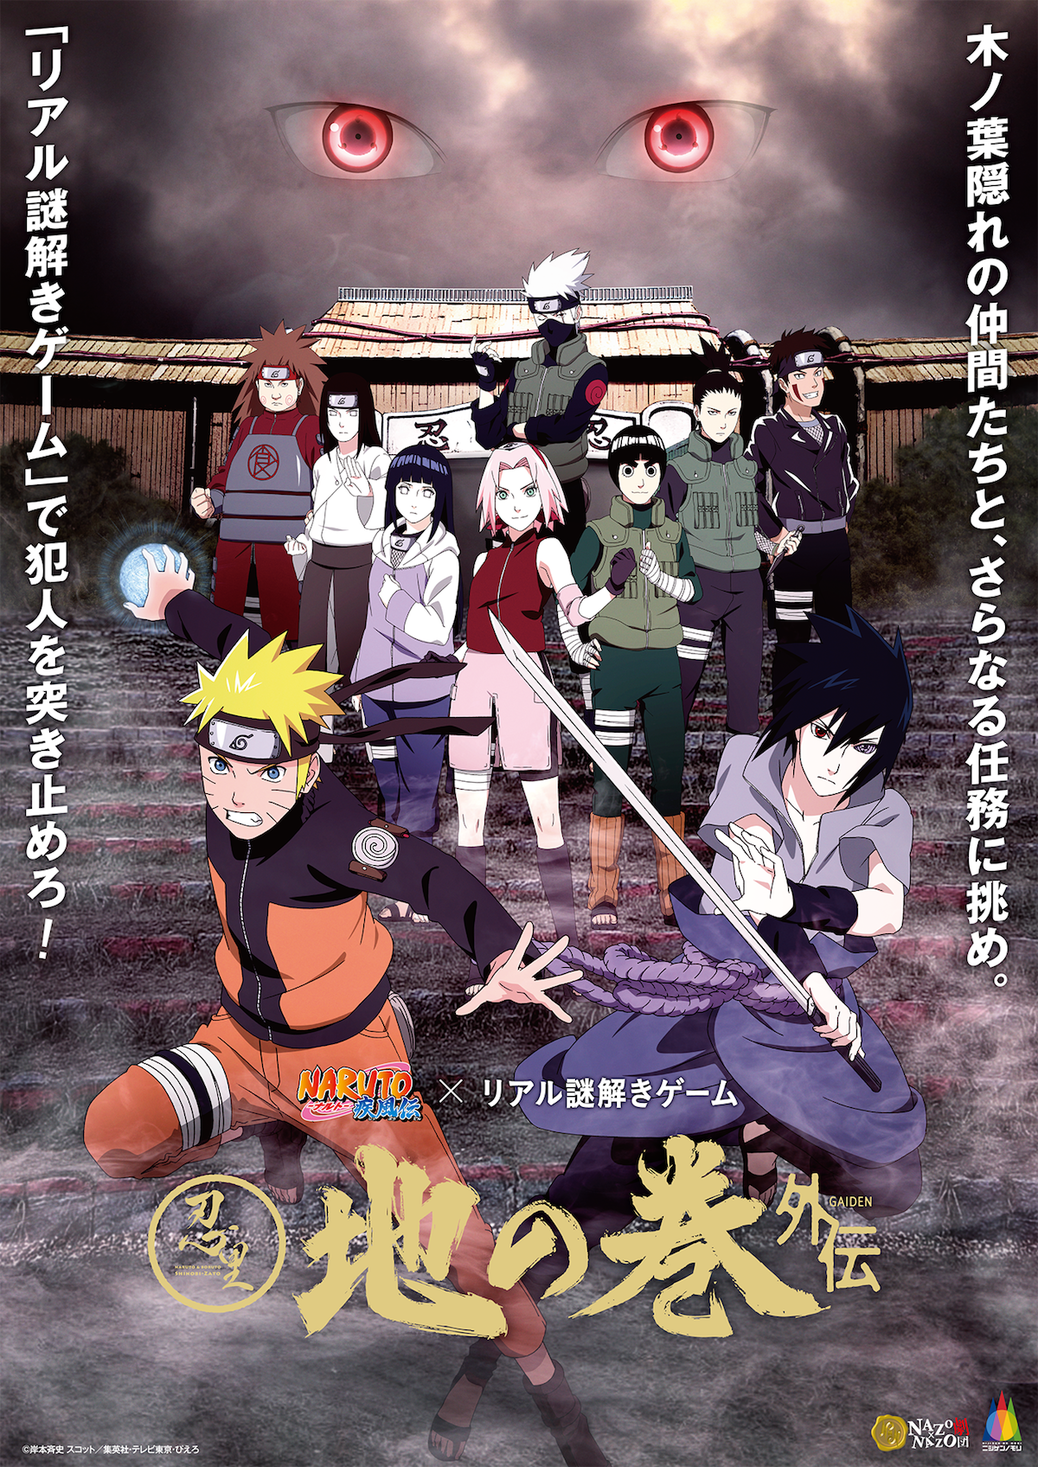 アニメ Naruto ナルト の世界観を再現したテーマエリアを周遊 リアル謎 解きゲーム9月14日からニジゲンノモリにて開催 Narutoファン必見 登場人物になる没入型 イベント限定ストーリー 株式会社ハレガケのプレスリリース